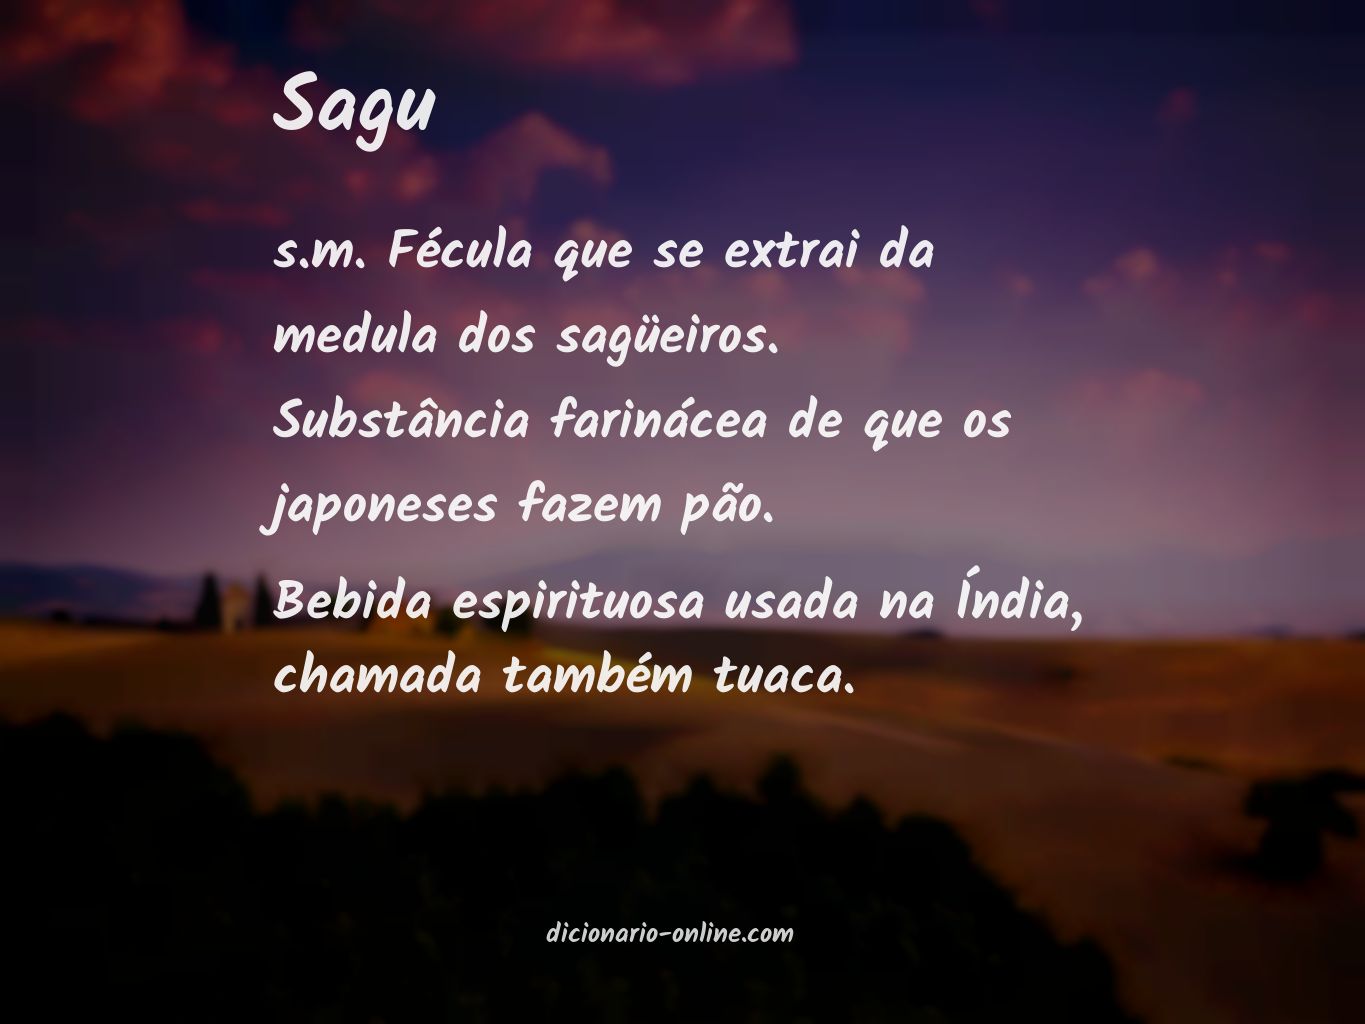 Significado de sagu